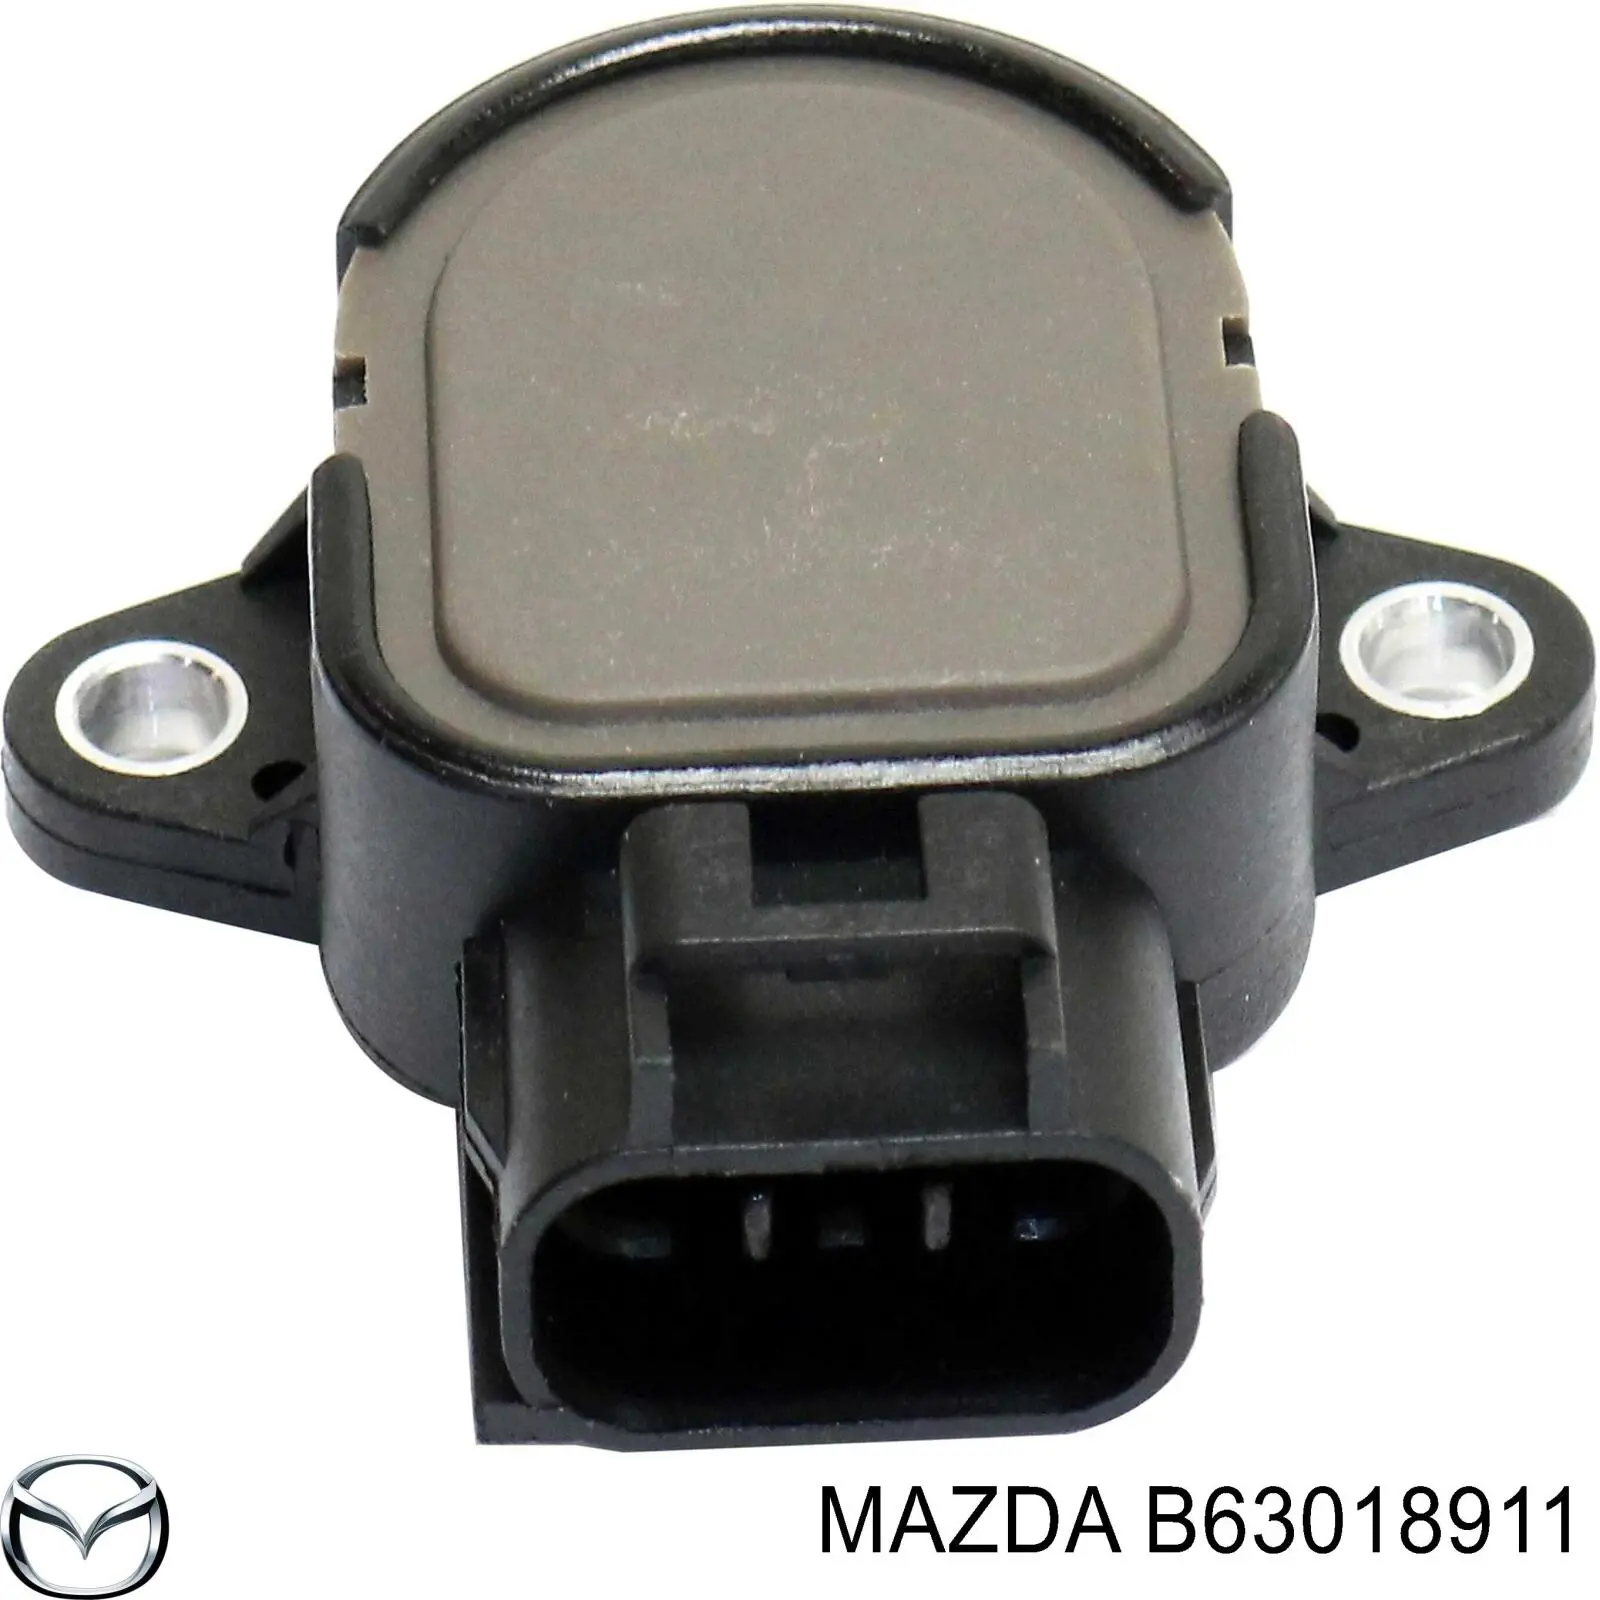 B63018911 Mazda sensor tps